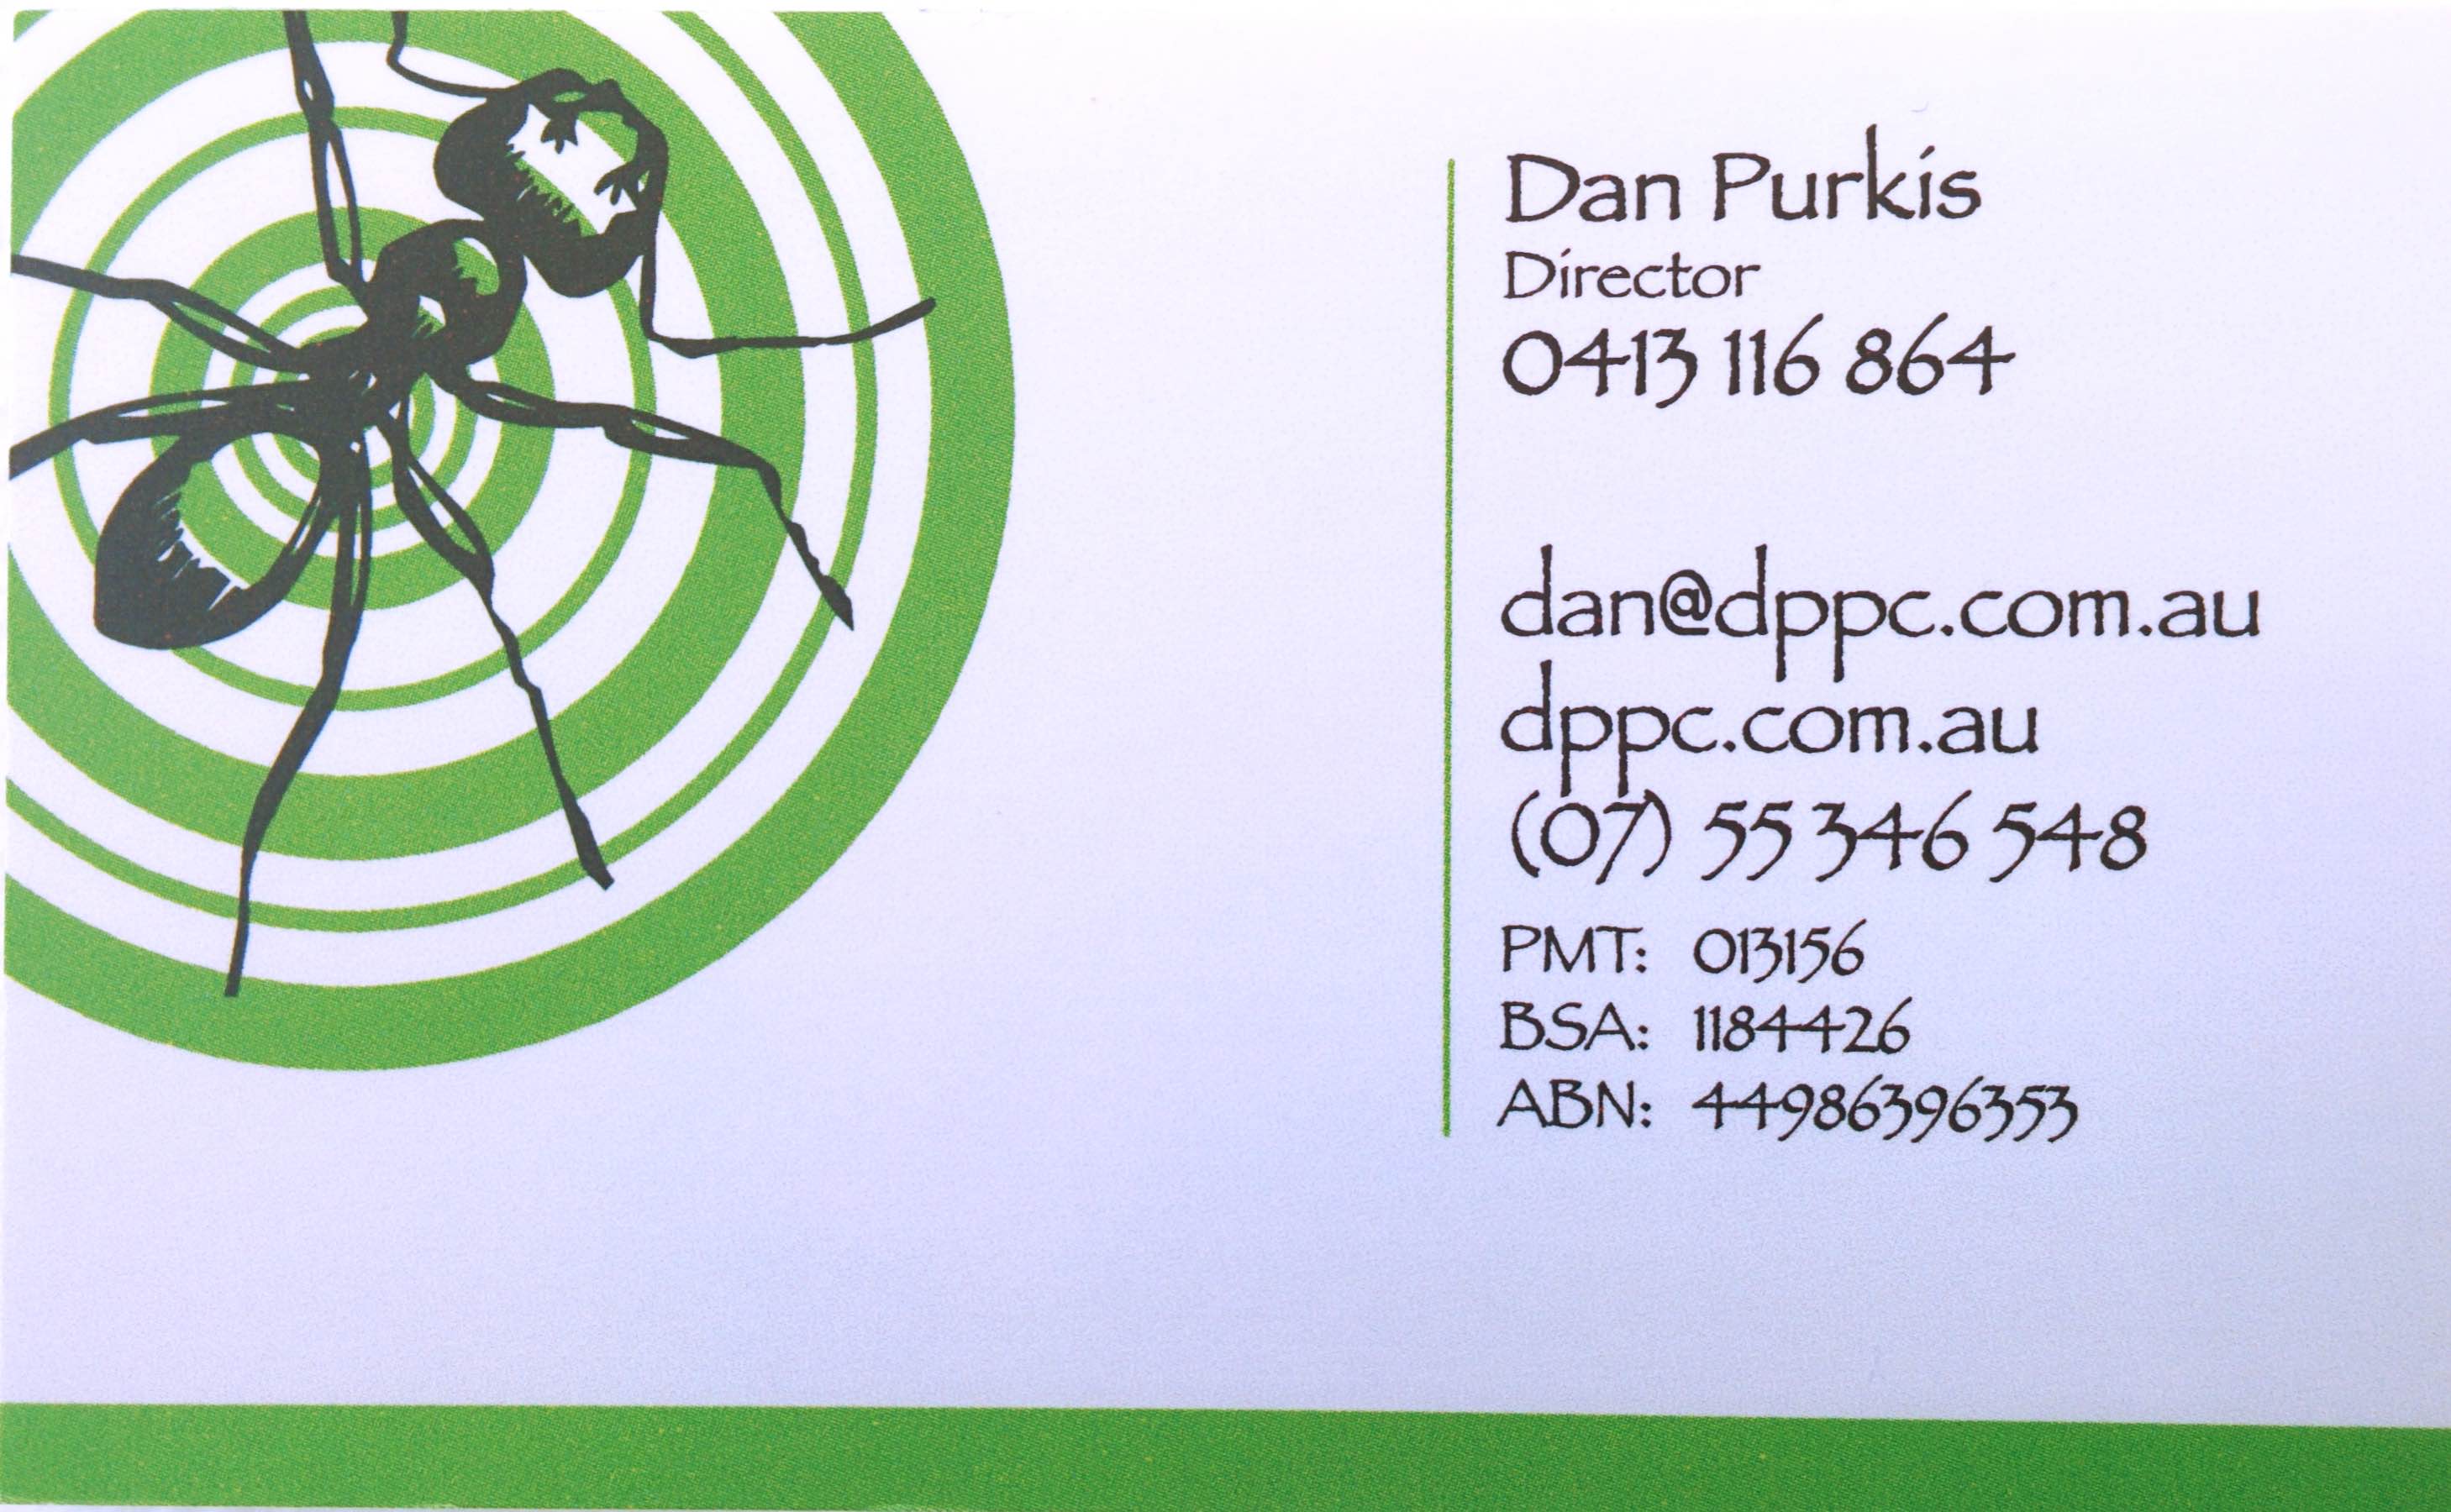 Dan Purkis Pest Control (Pre -Purchase Building & Pest Inspection)